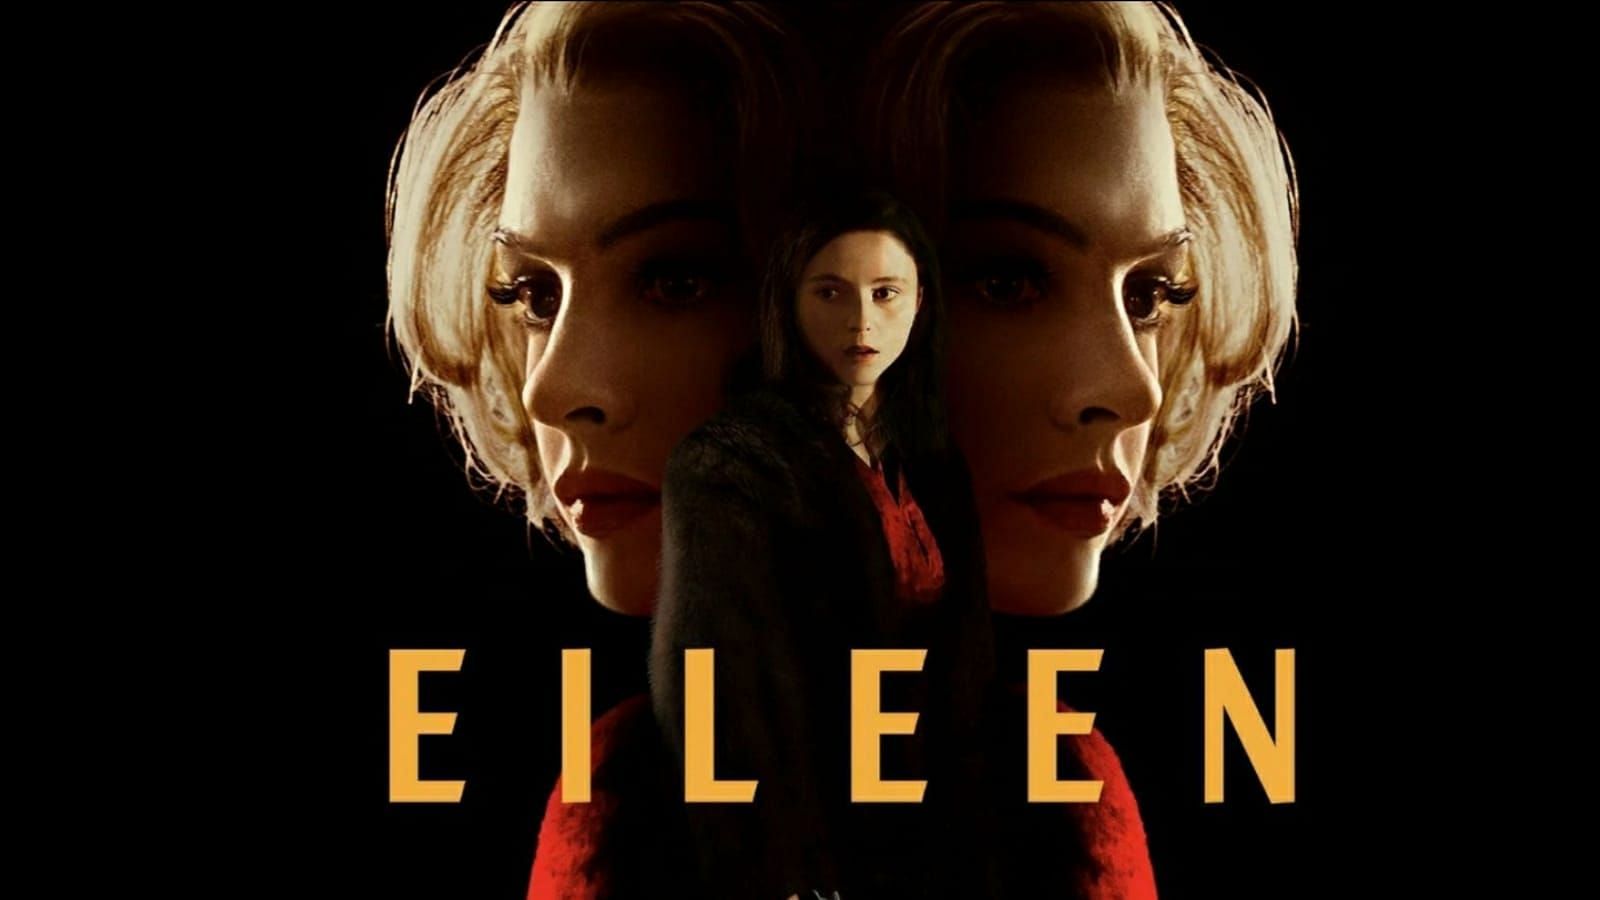 Eileen movie poster (Image via Hulu/Facebook)